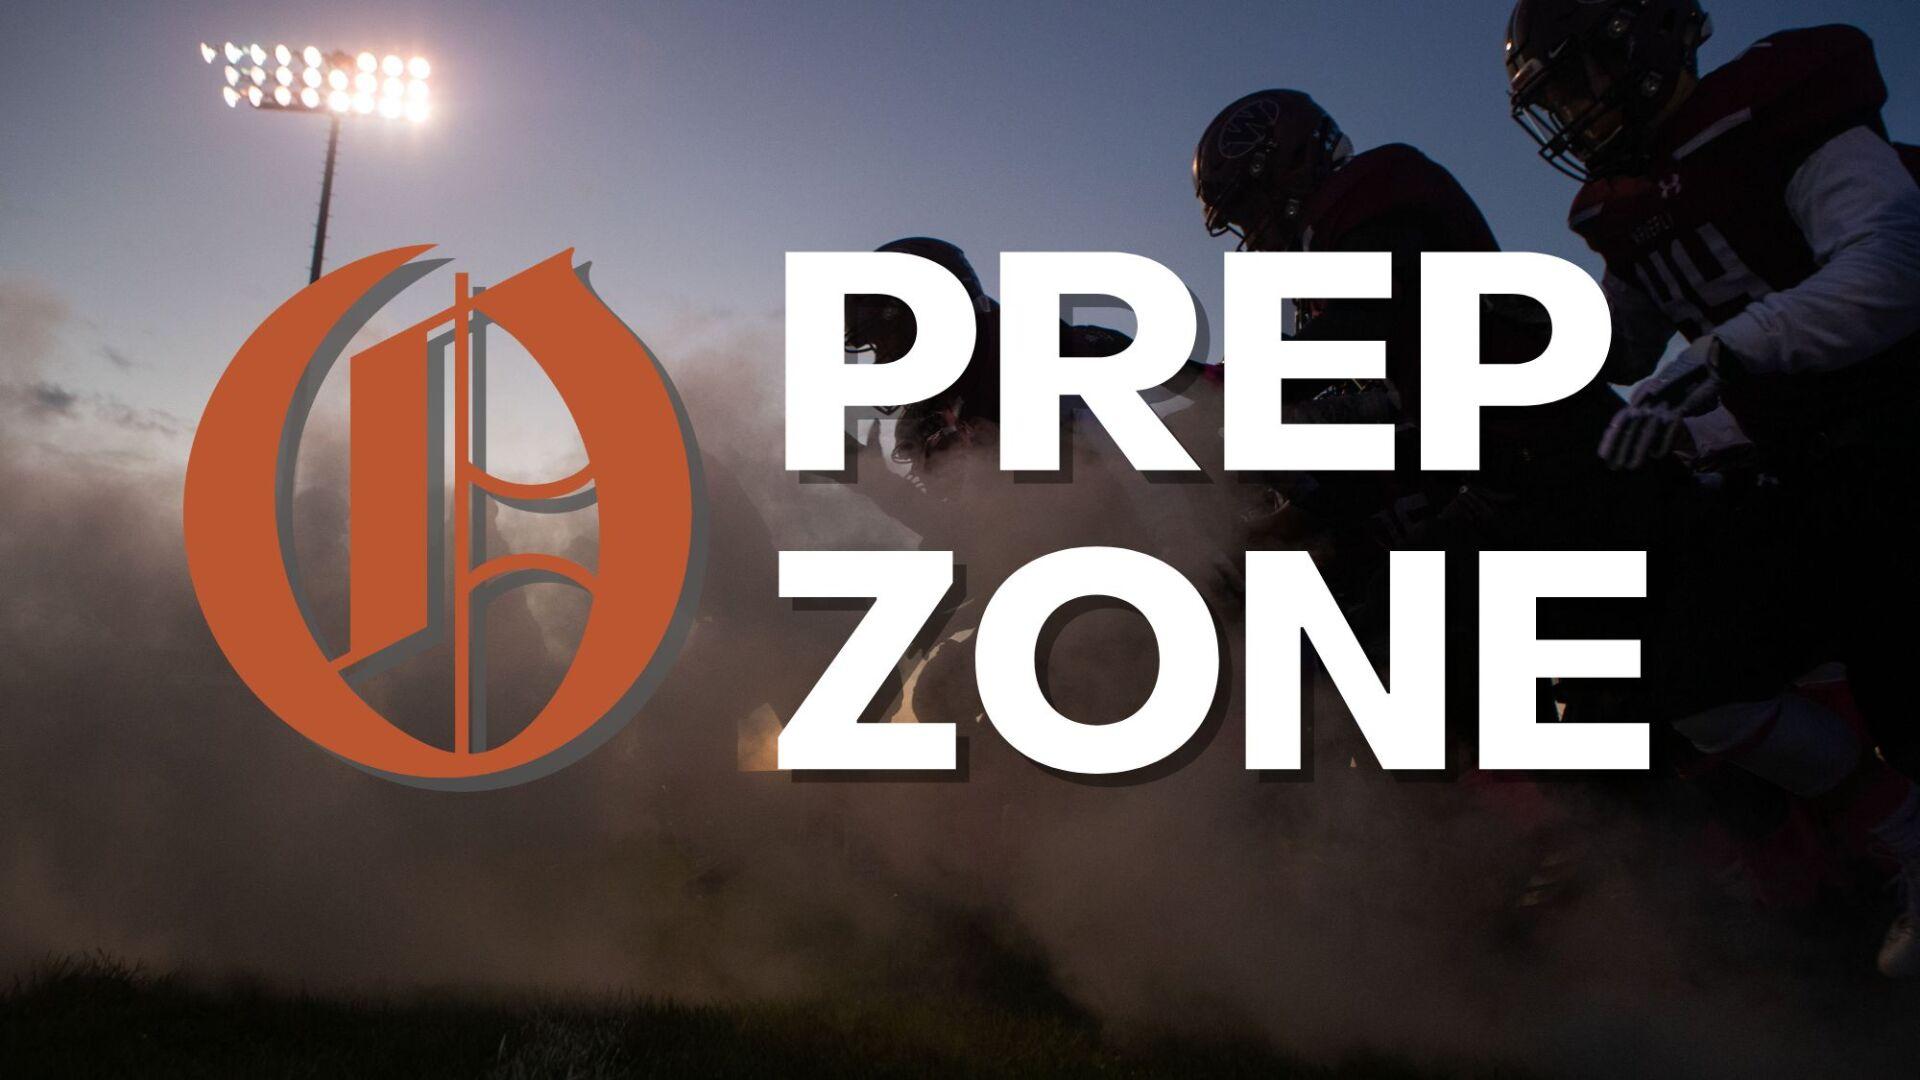 Prep Zone